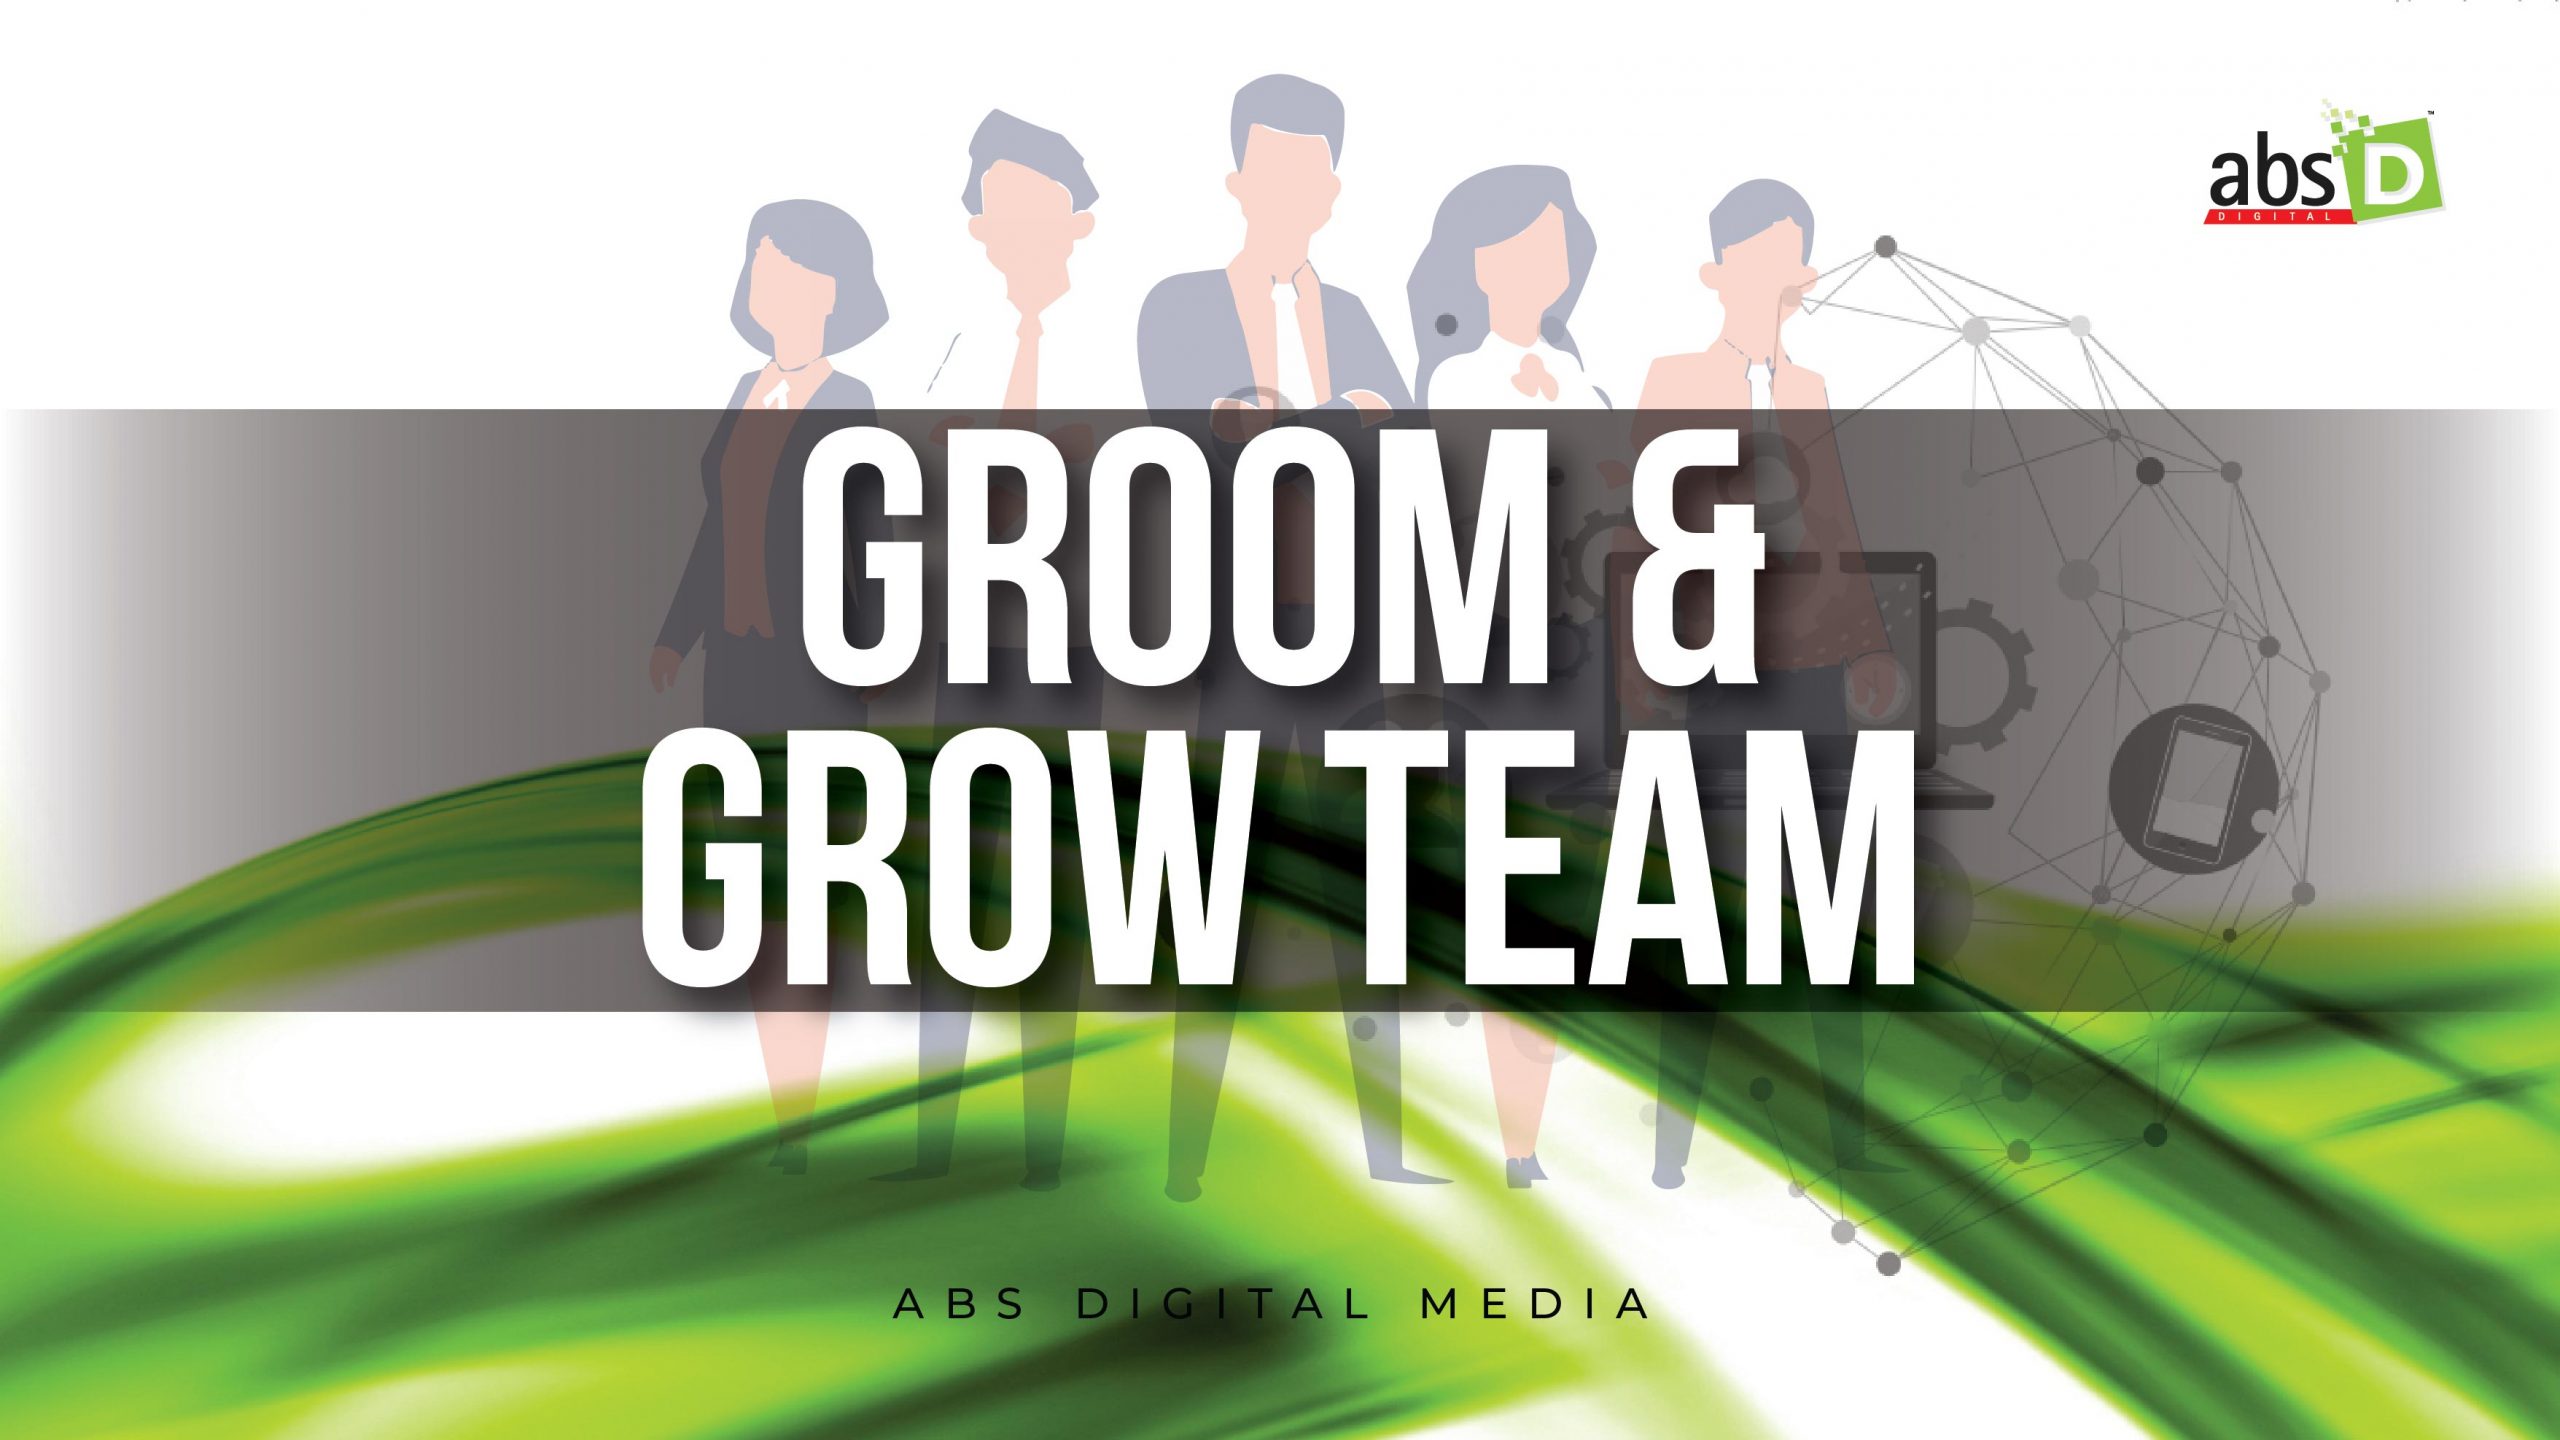 Groom & Grow Team-01